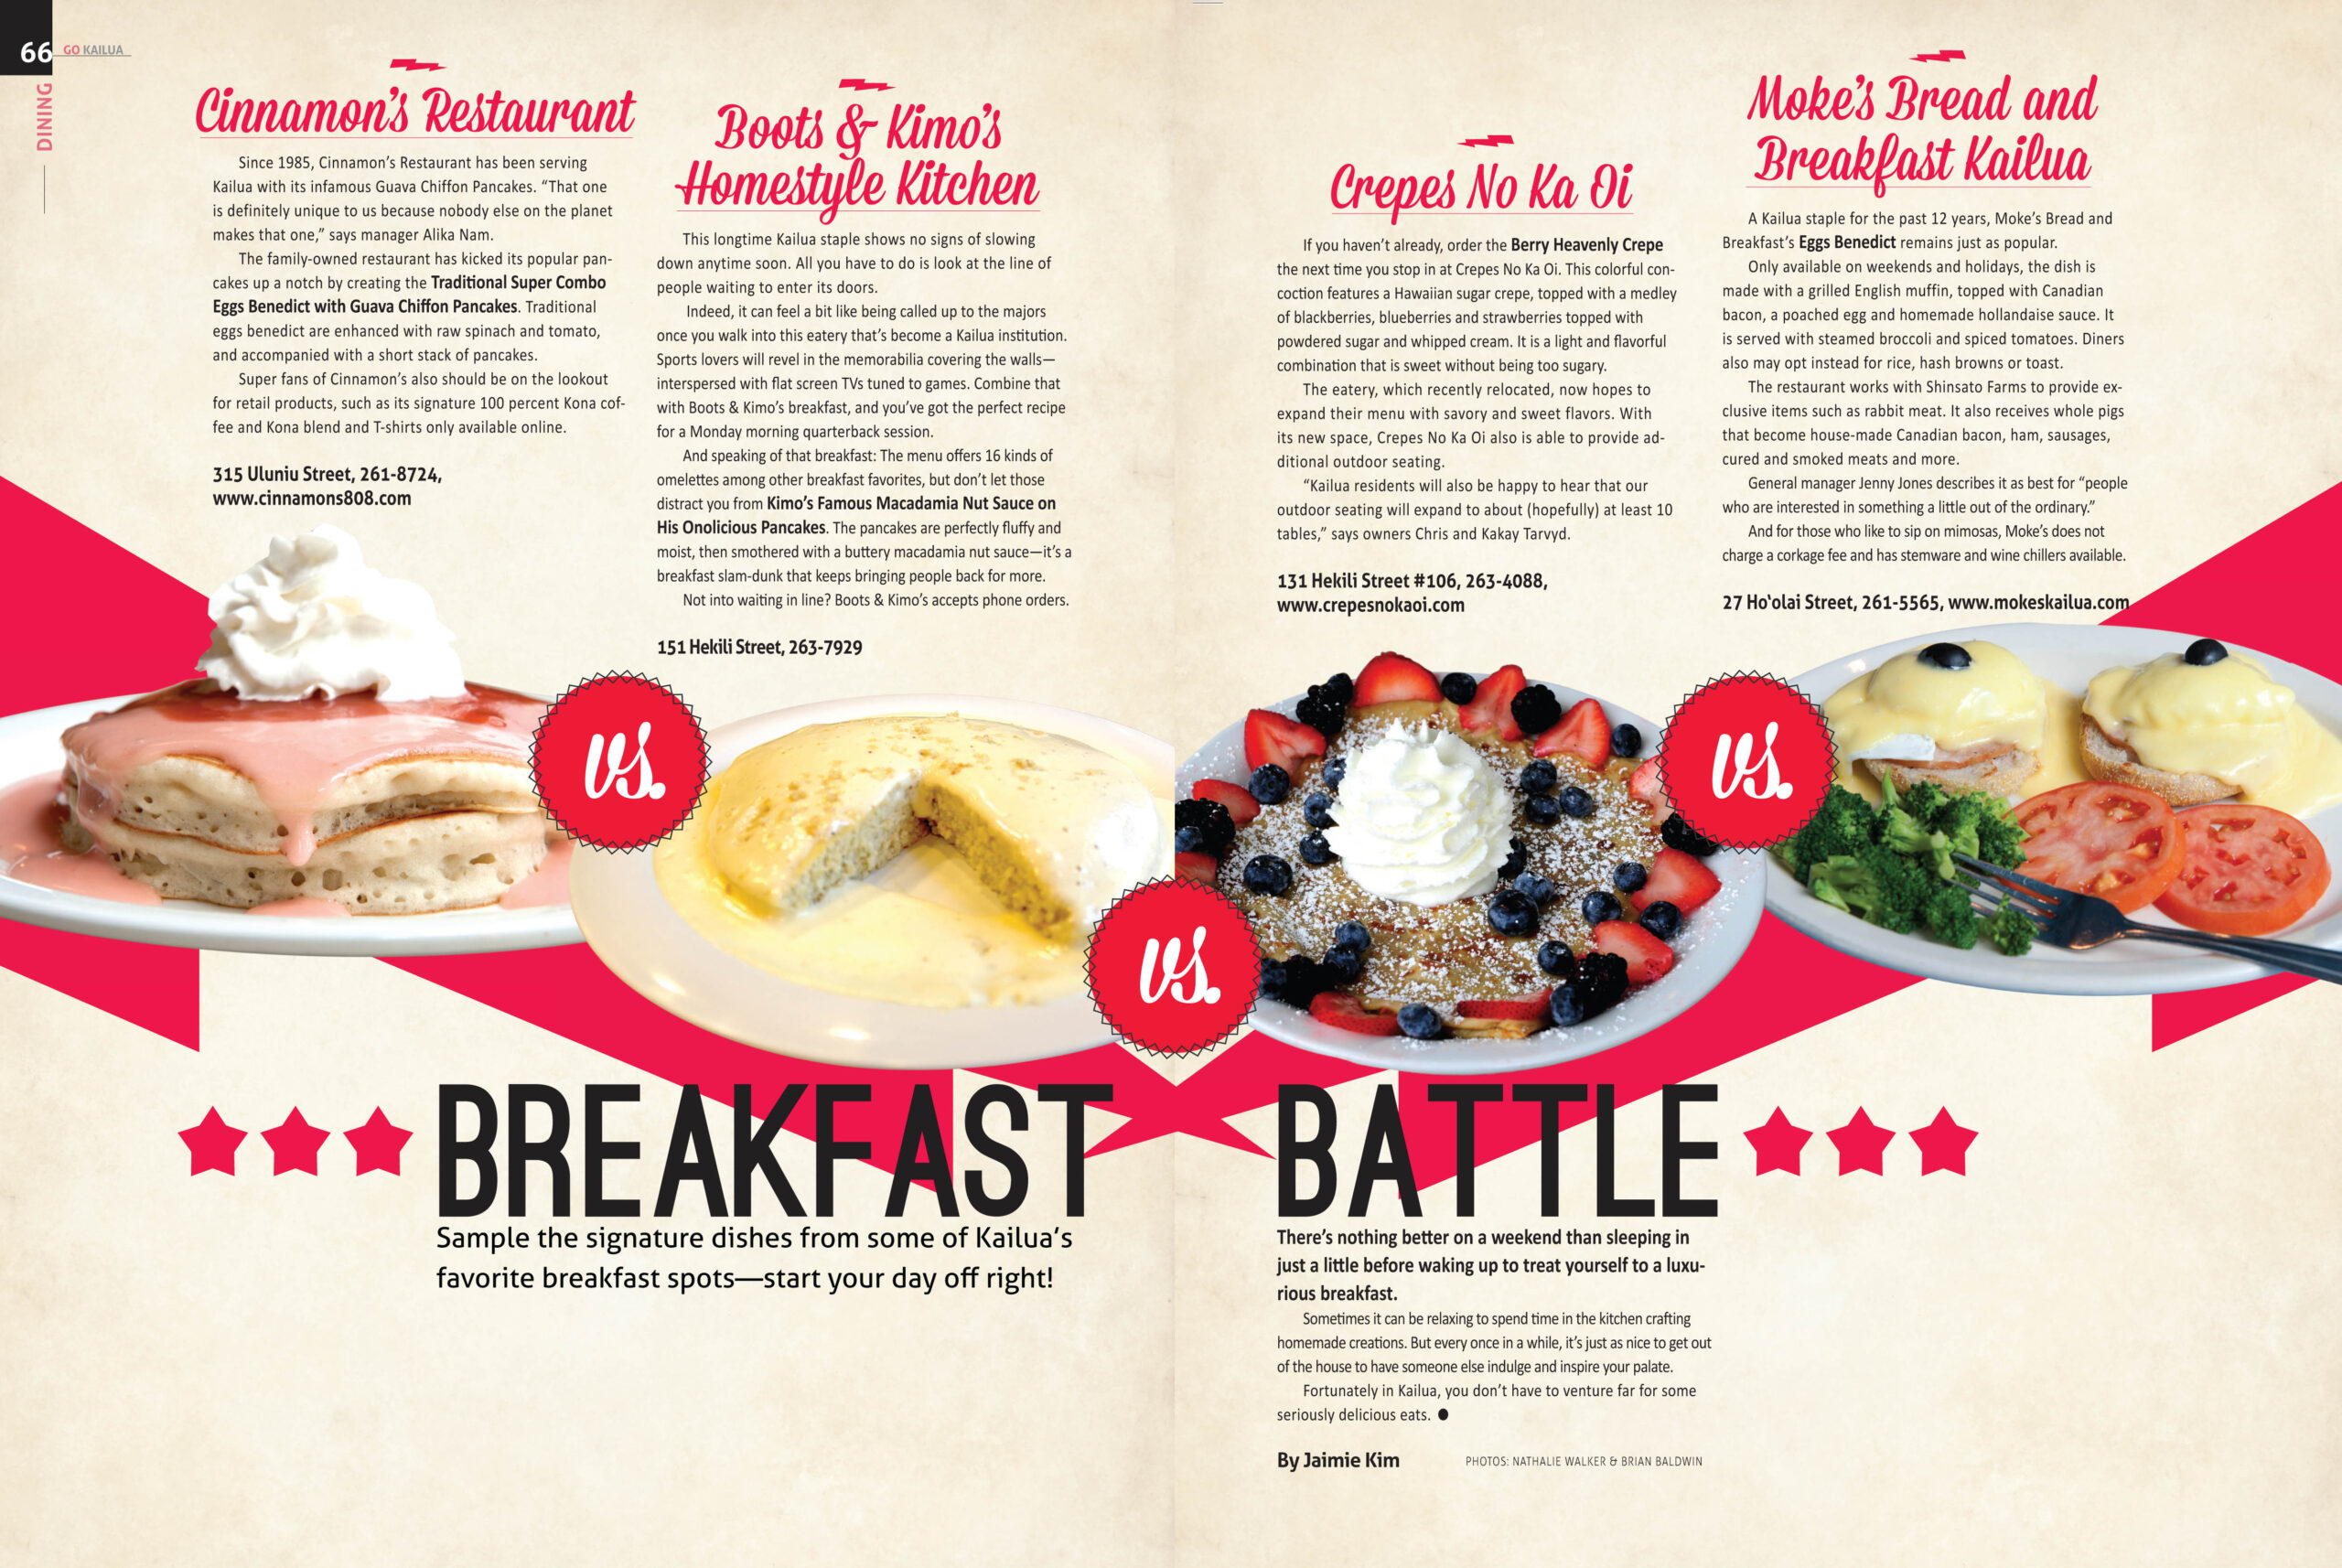 Breakfast-Battle-scaled.jpg